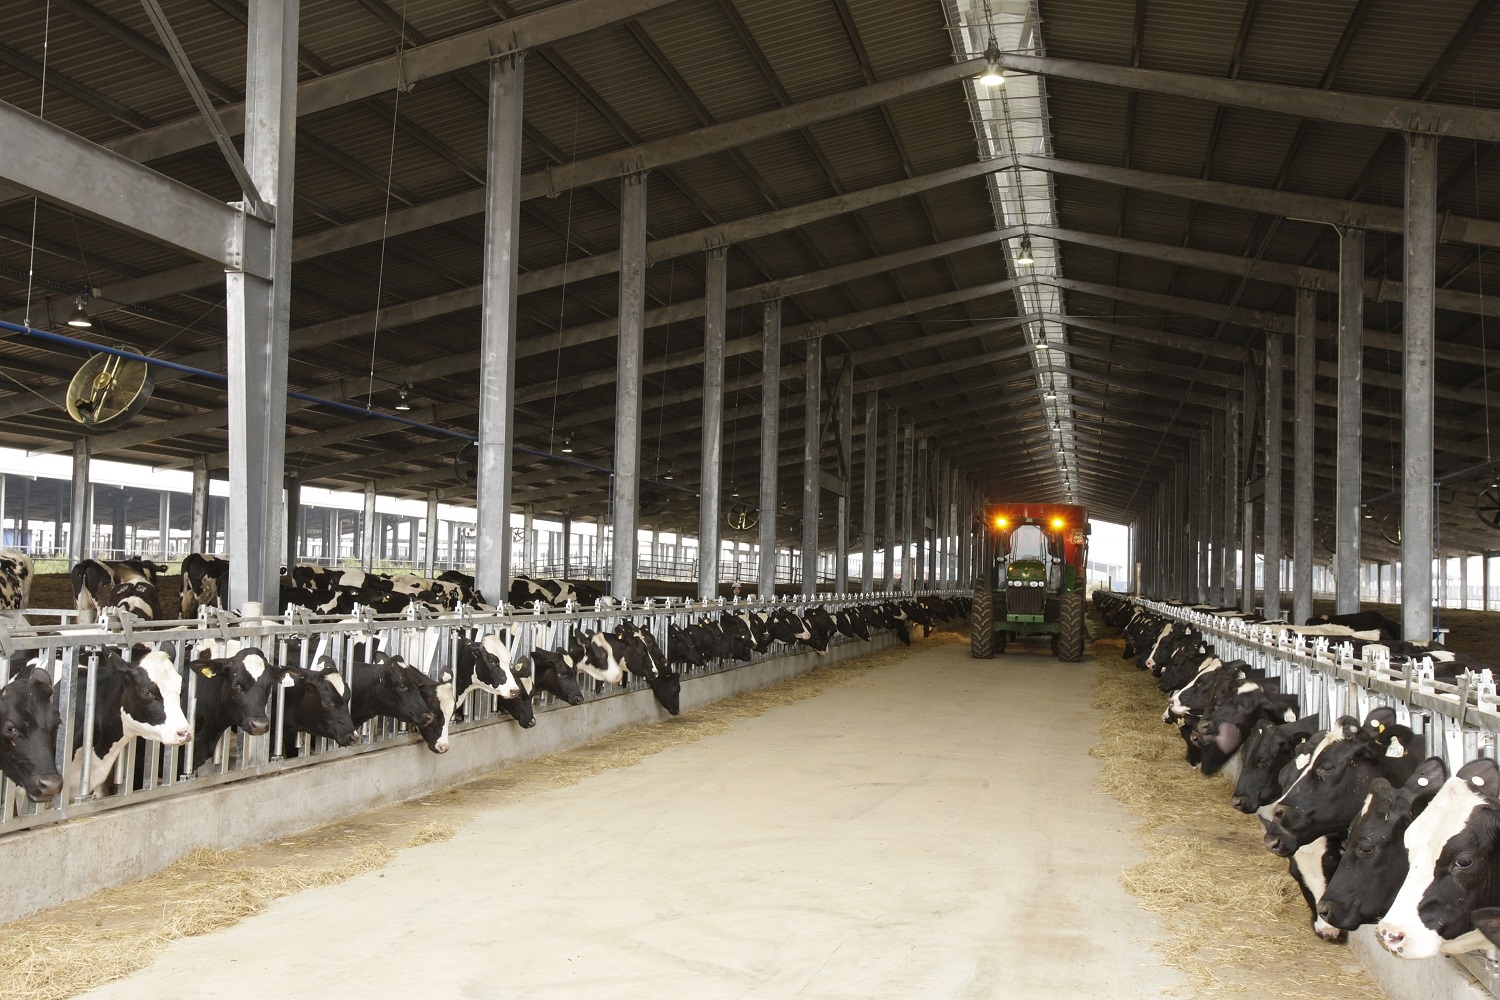 Dự án Chăn nuôi bò sữa và chế biến sữa tập trung quy mô công nghiệp công nghệ cao của TH do bà Thái Hương dẫn dắt có tổng vốn đầu tư 1,2 tỷ USD